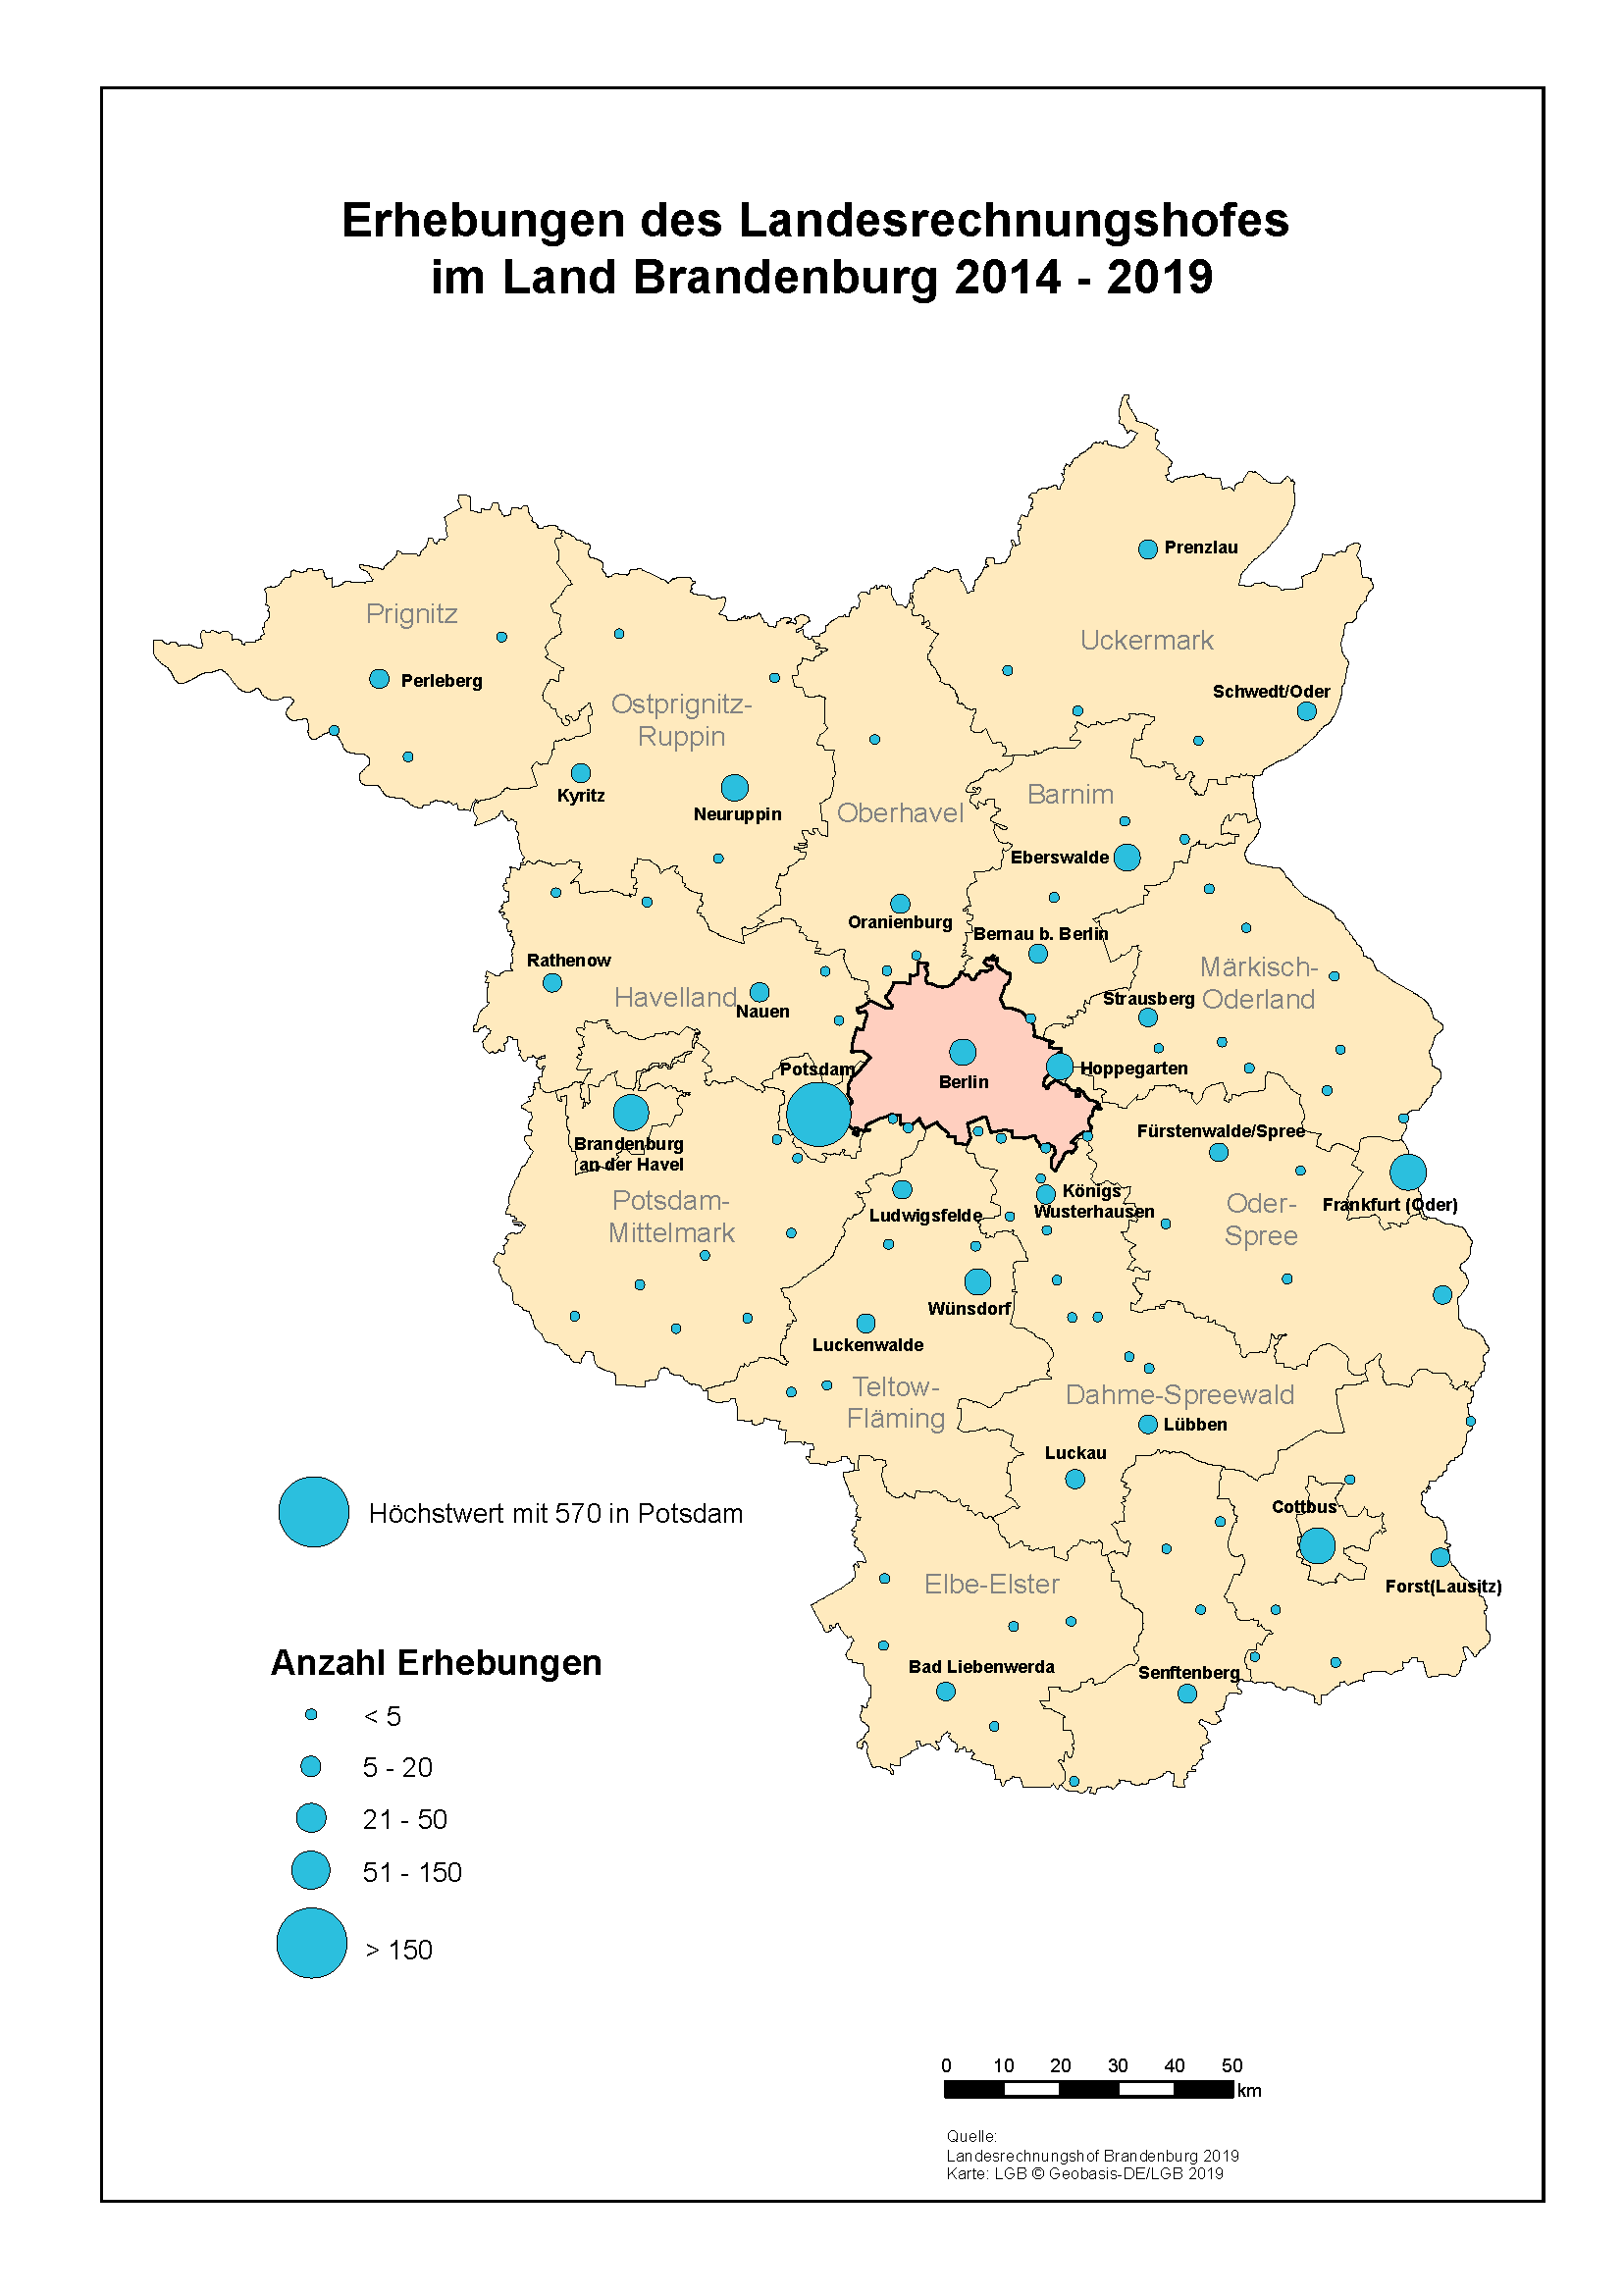 Karte über die Erhebungen des Landesrechnungshofes 2014 - 2019